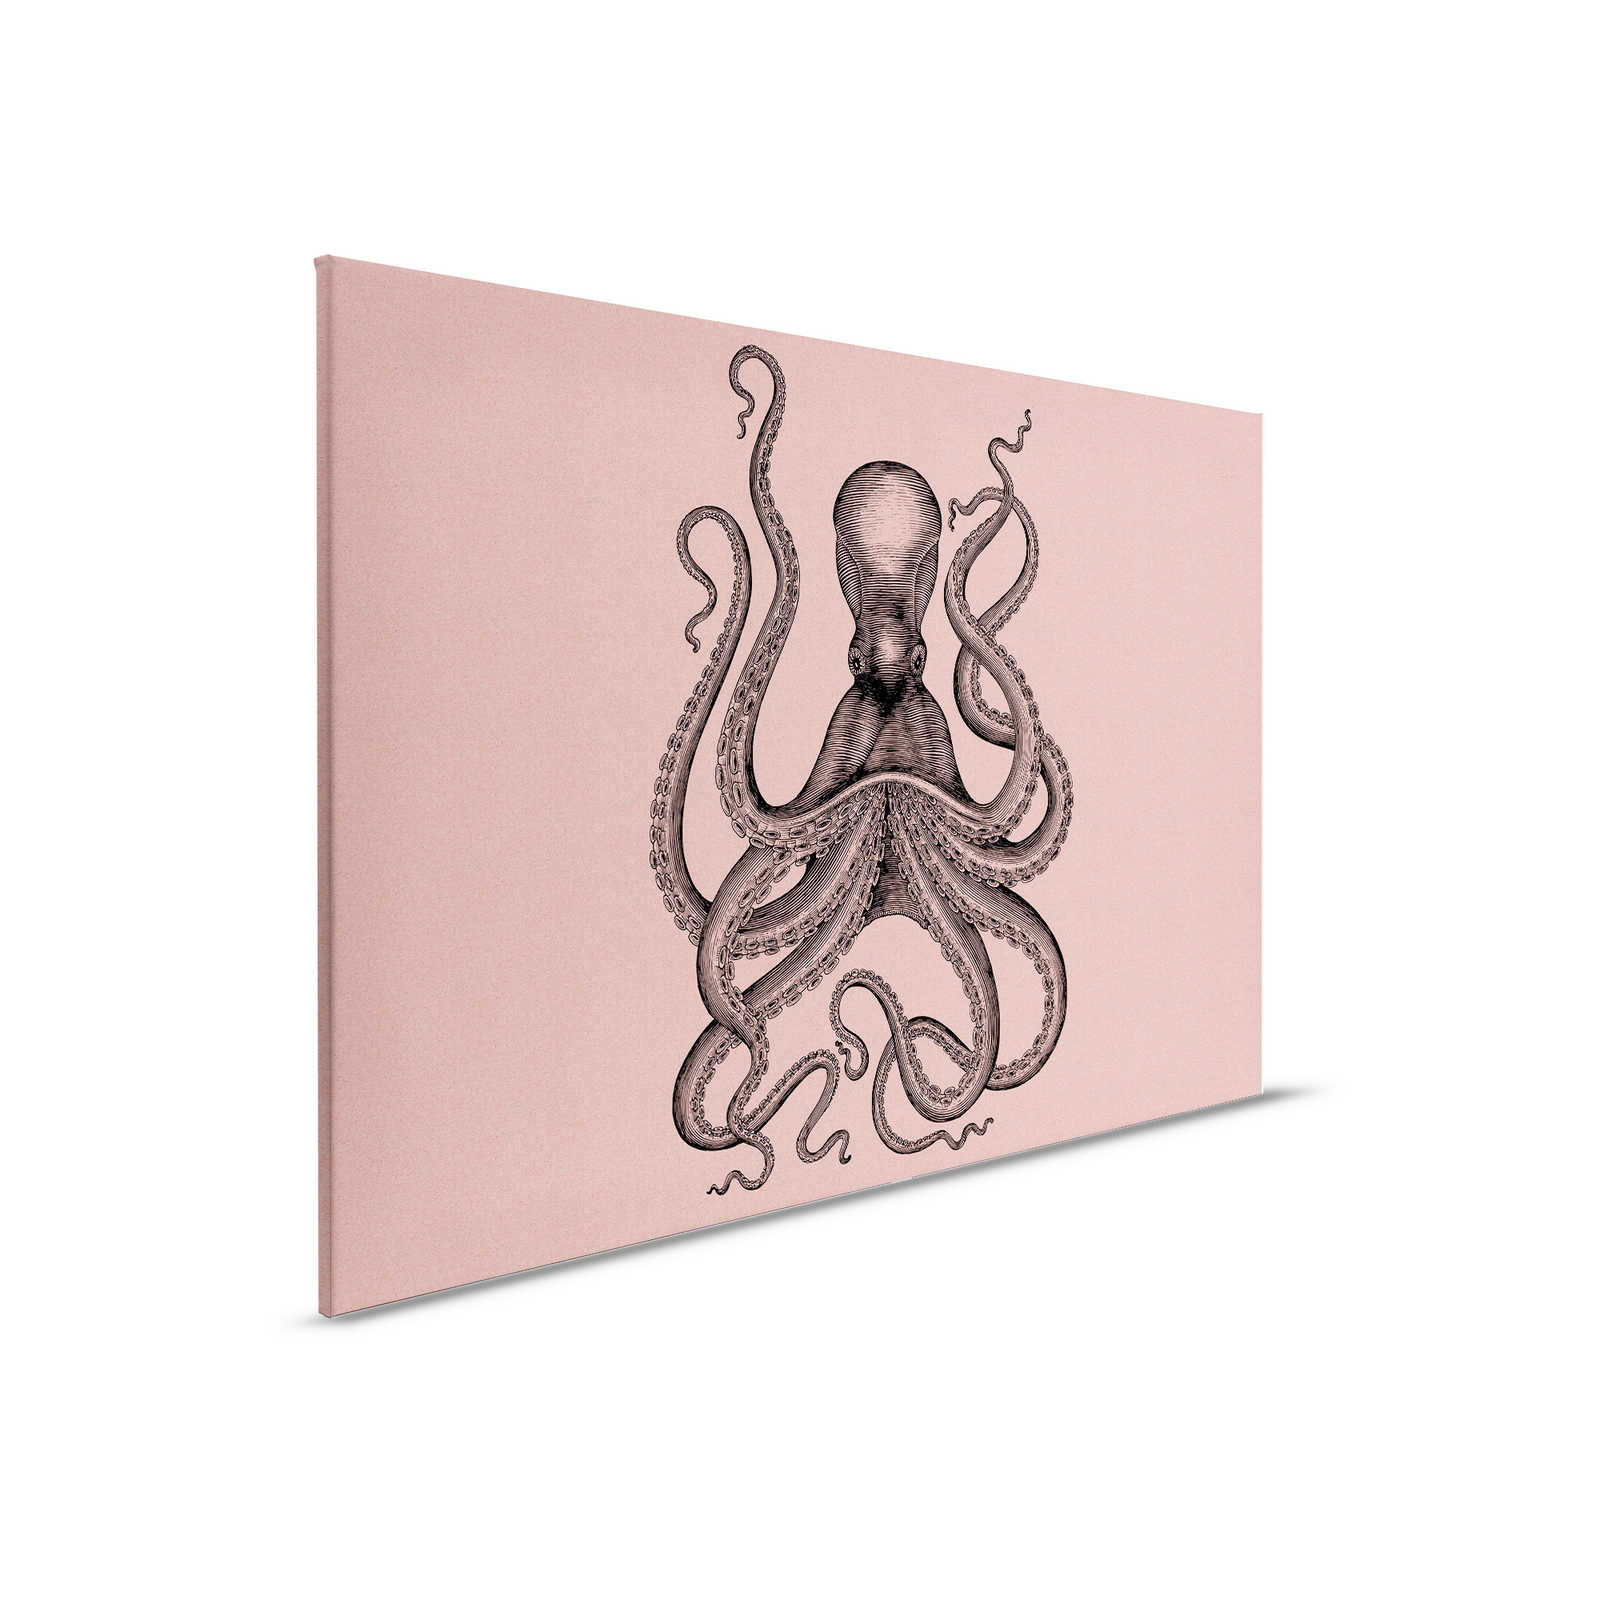         Jules 1 - Leinwandbild mit Kraken im Zeichnung & Retro Stil in Pappe Struktur – 0,90 m x 0,60 m
    